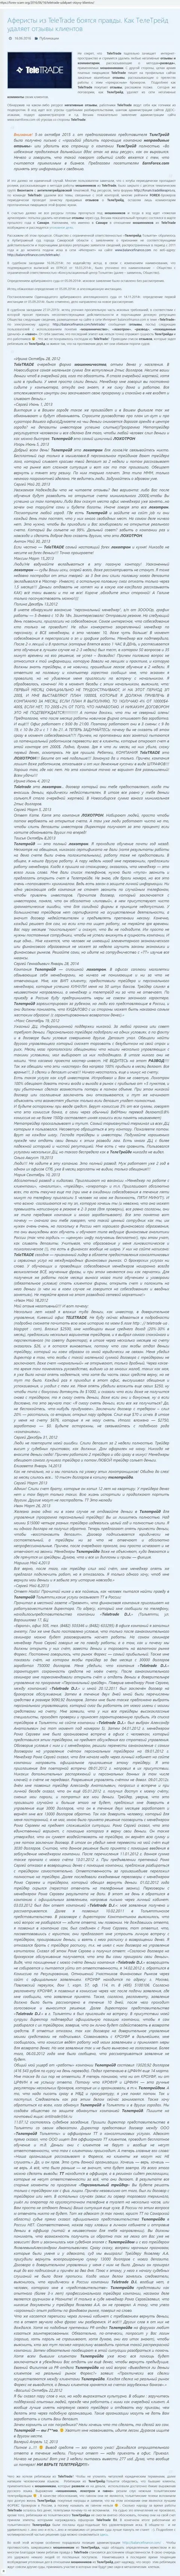 Факт ДДоС атак в отношении неугодных лиц для бессовестных мошенников TeleTrade Ru